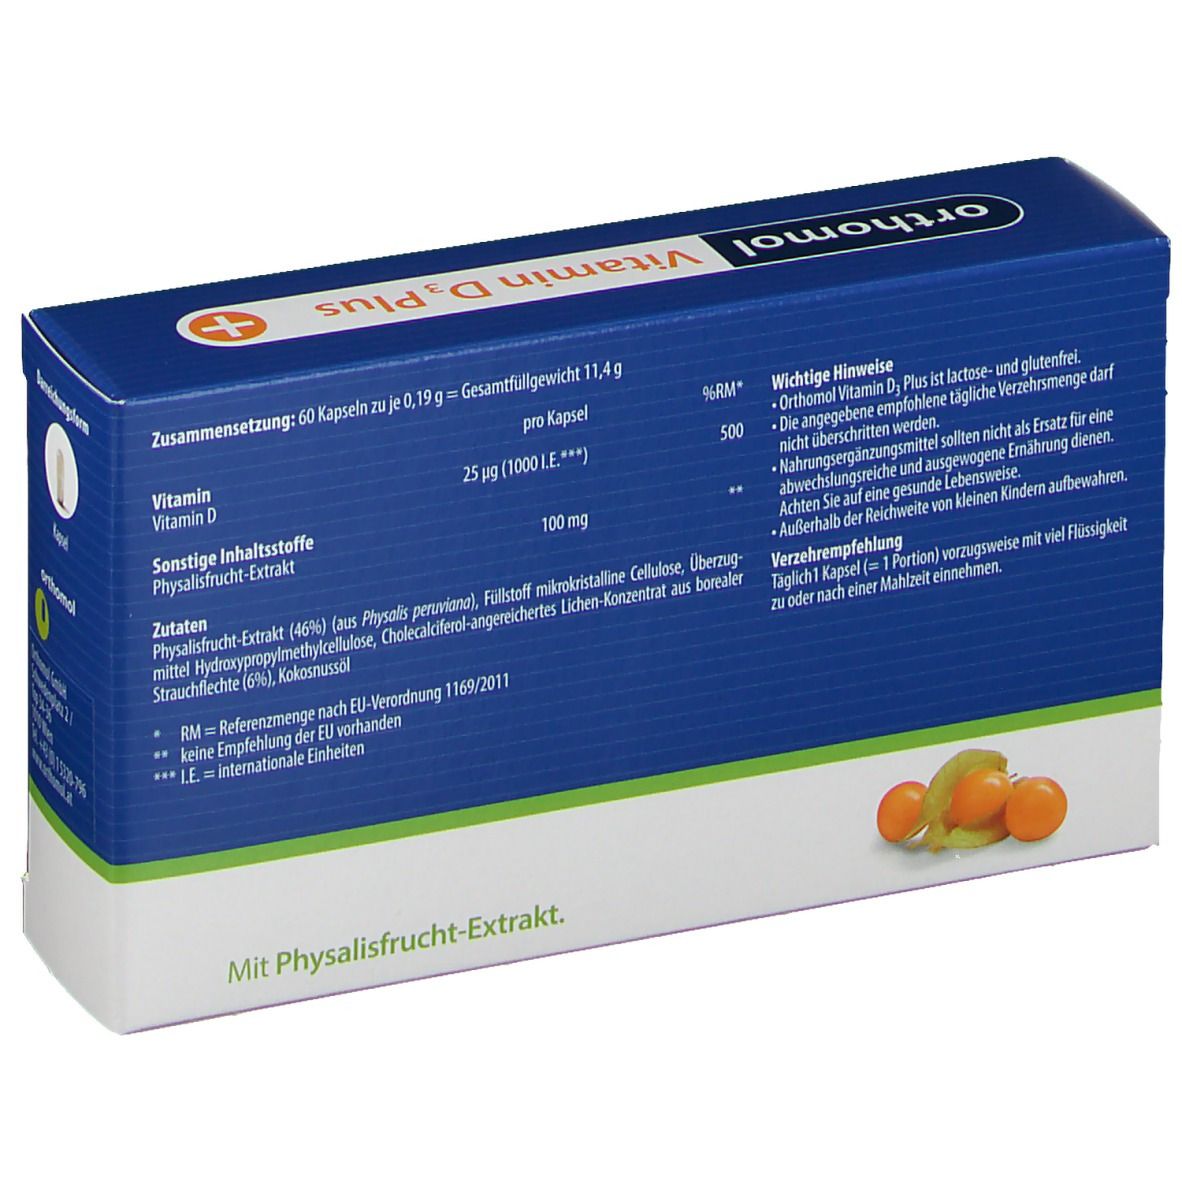 orthomol Vitamin D3 Plus Kapseln